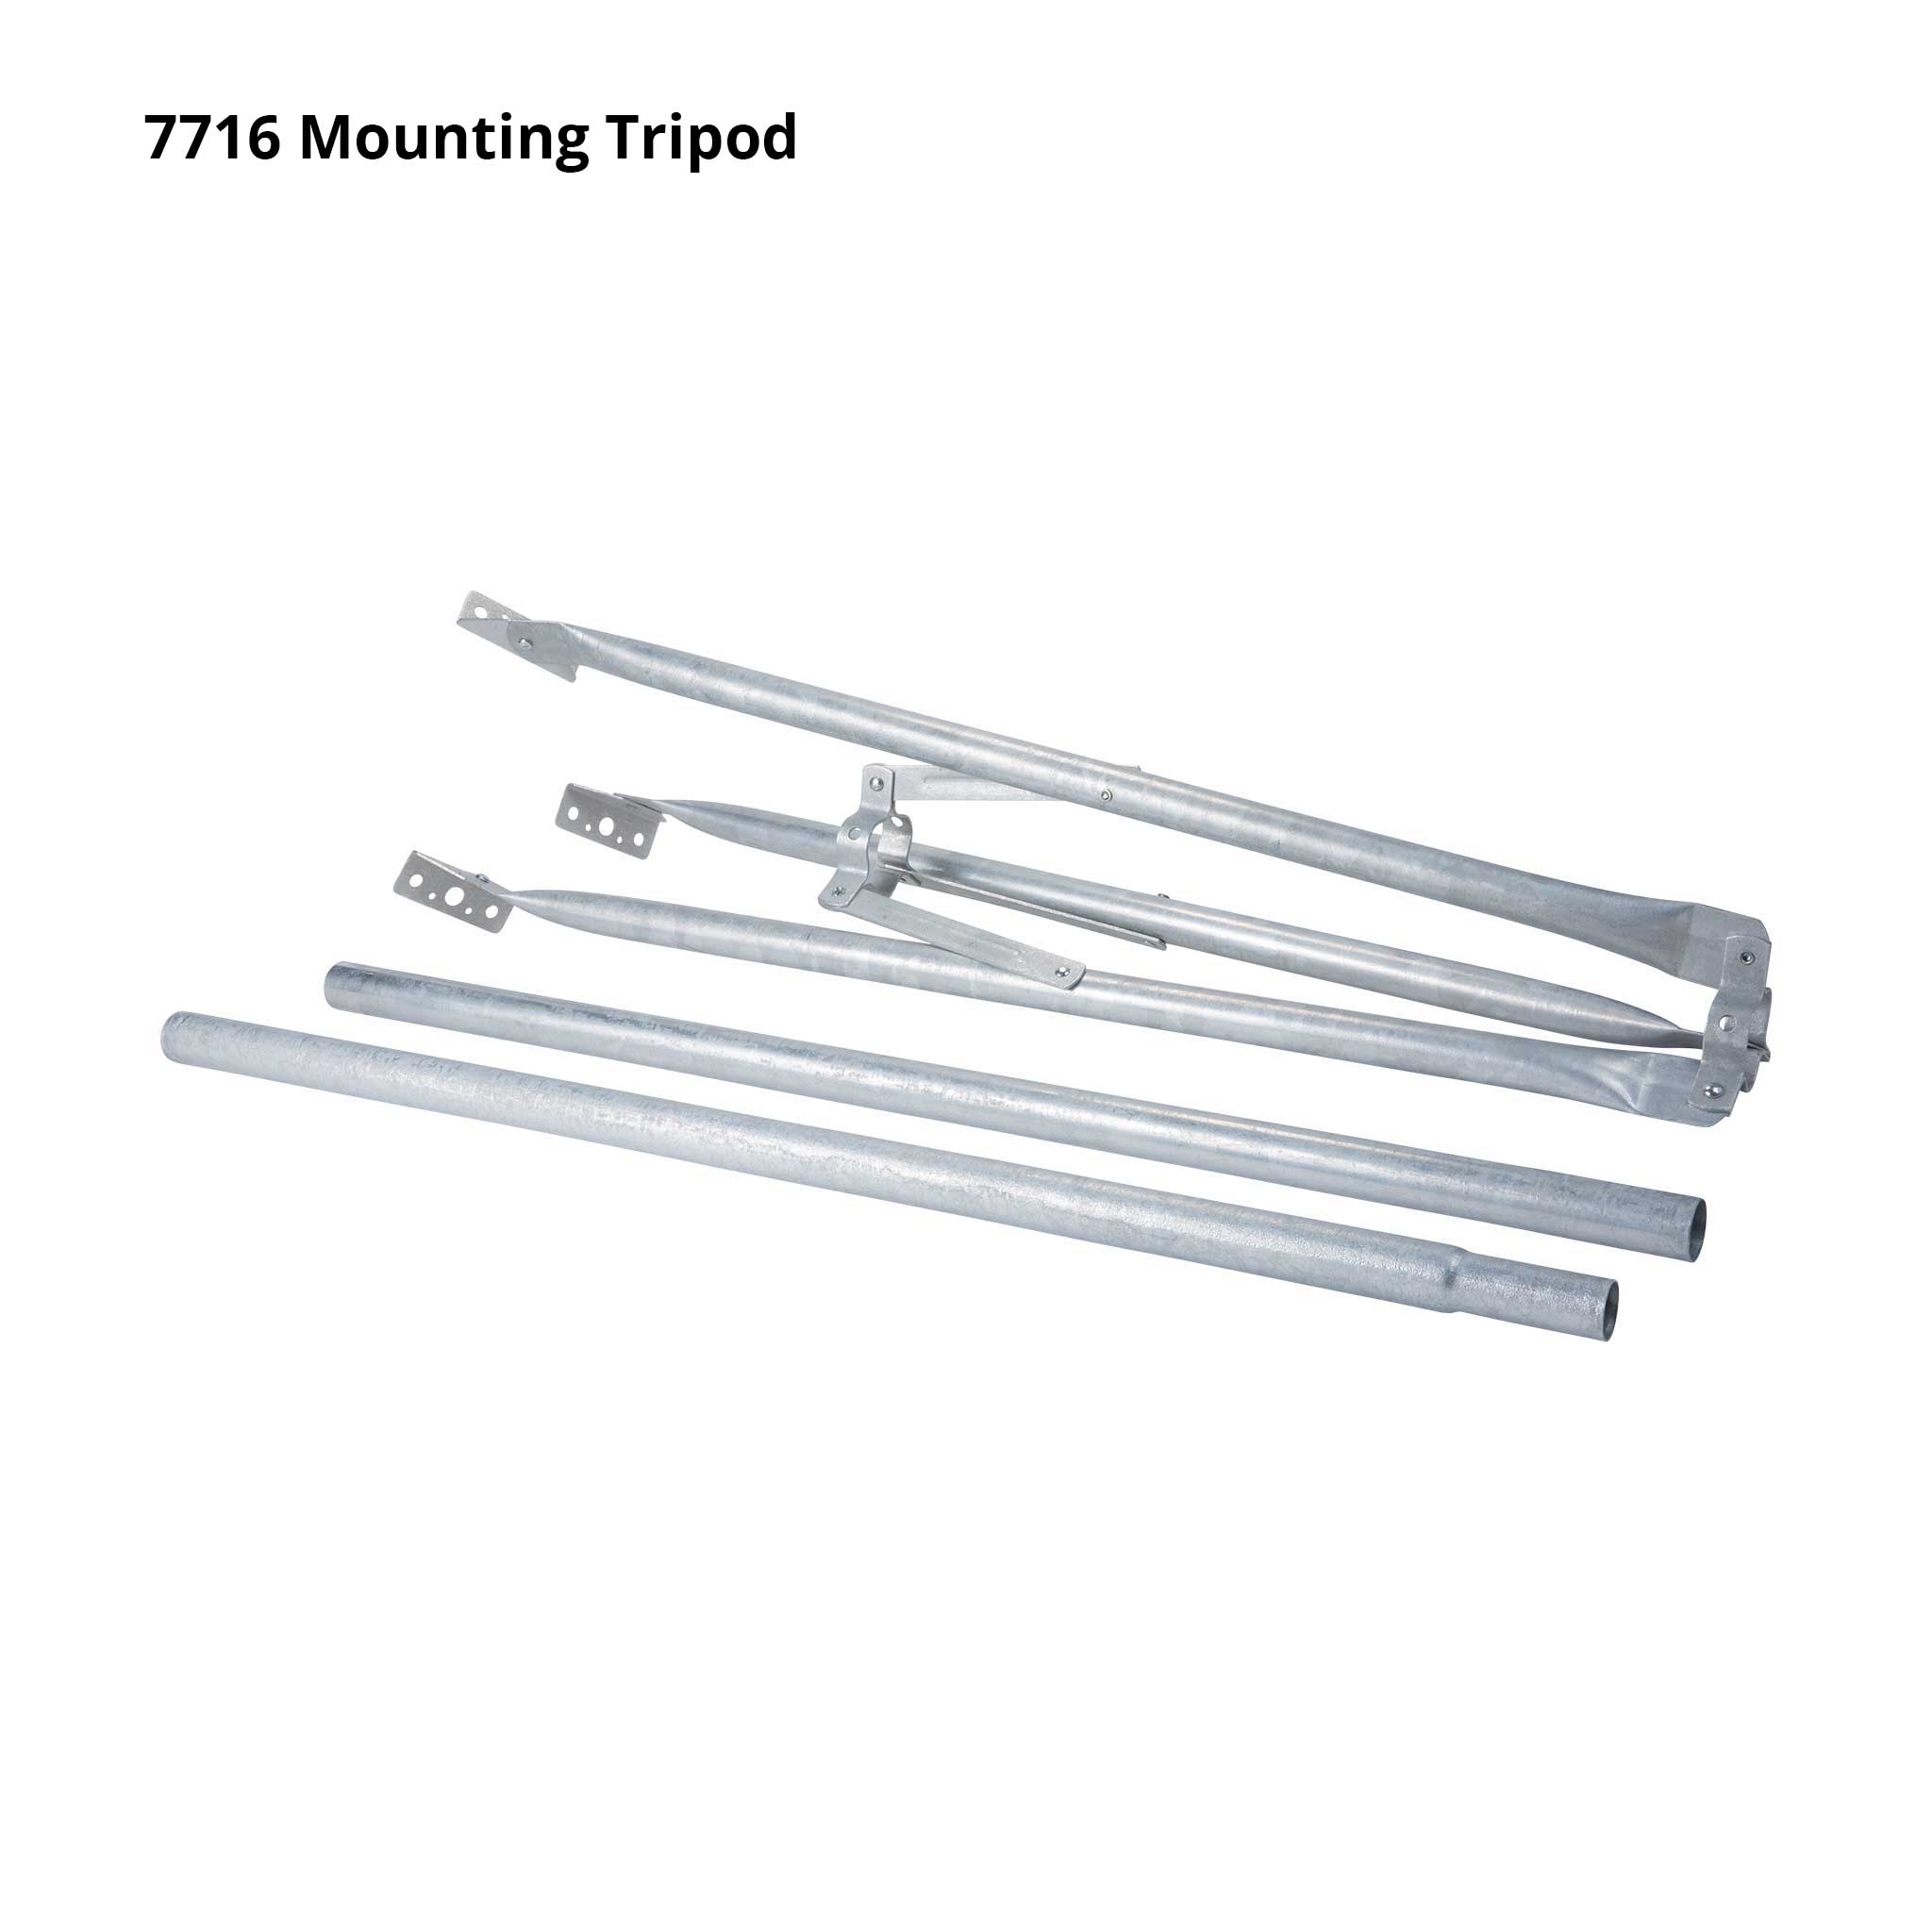 Mounting Tripod - SKU 7716, 7716A